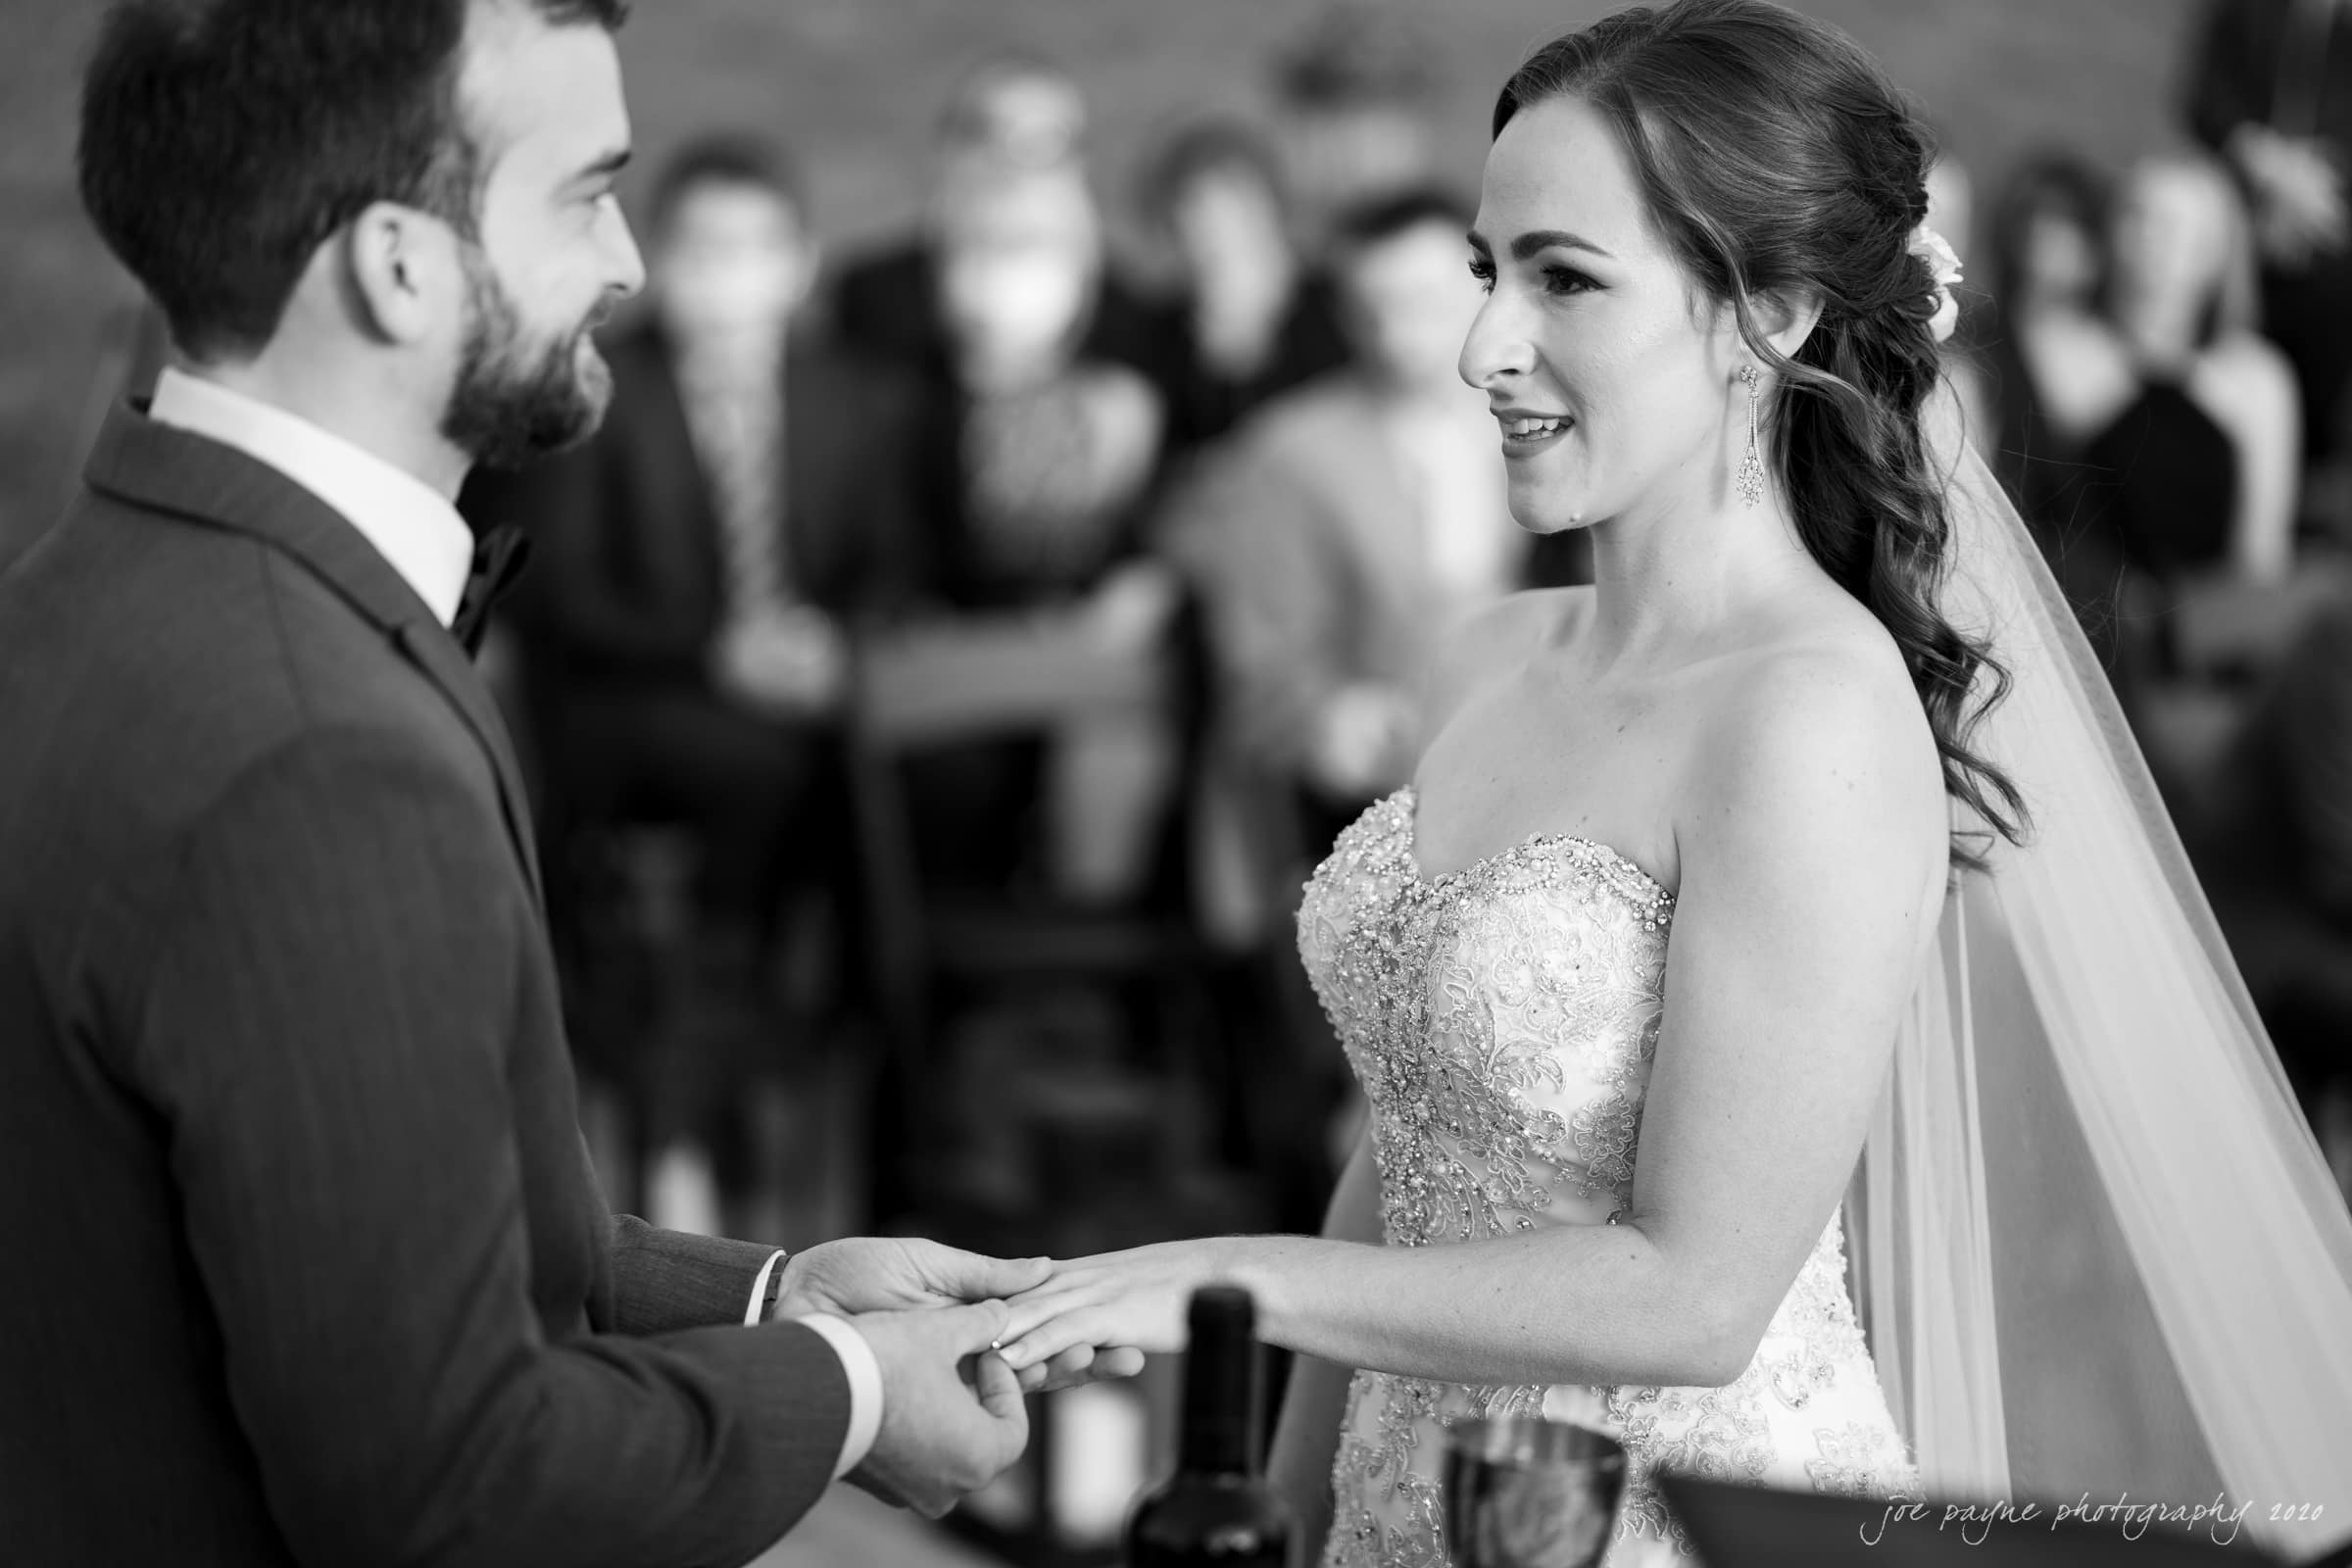 Childress Vineyards Wedding – Sophia & Kevin